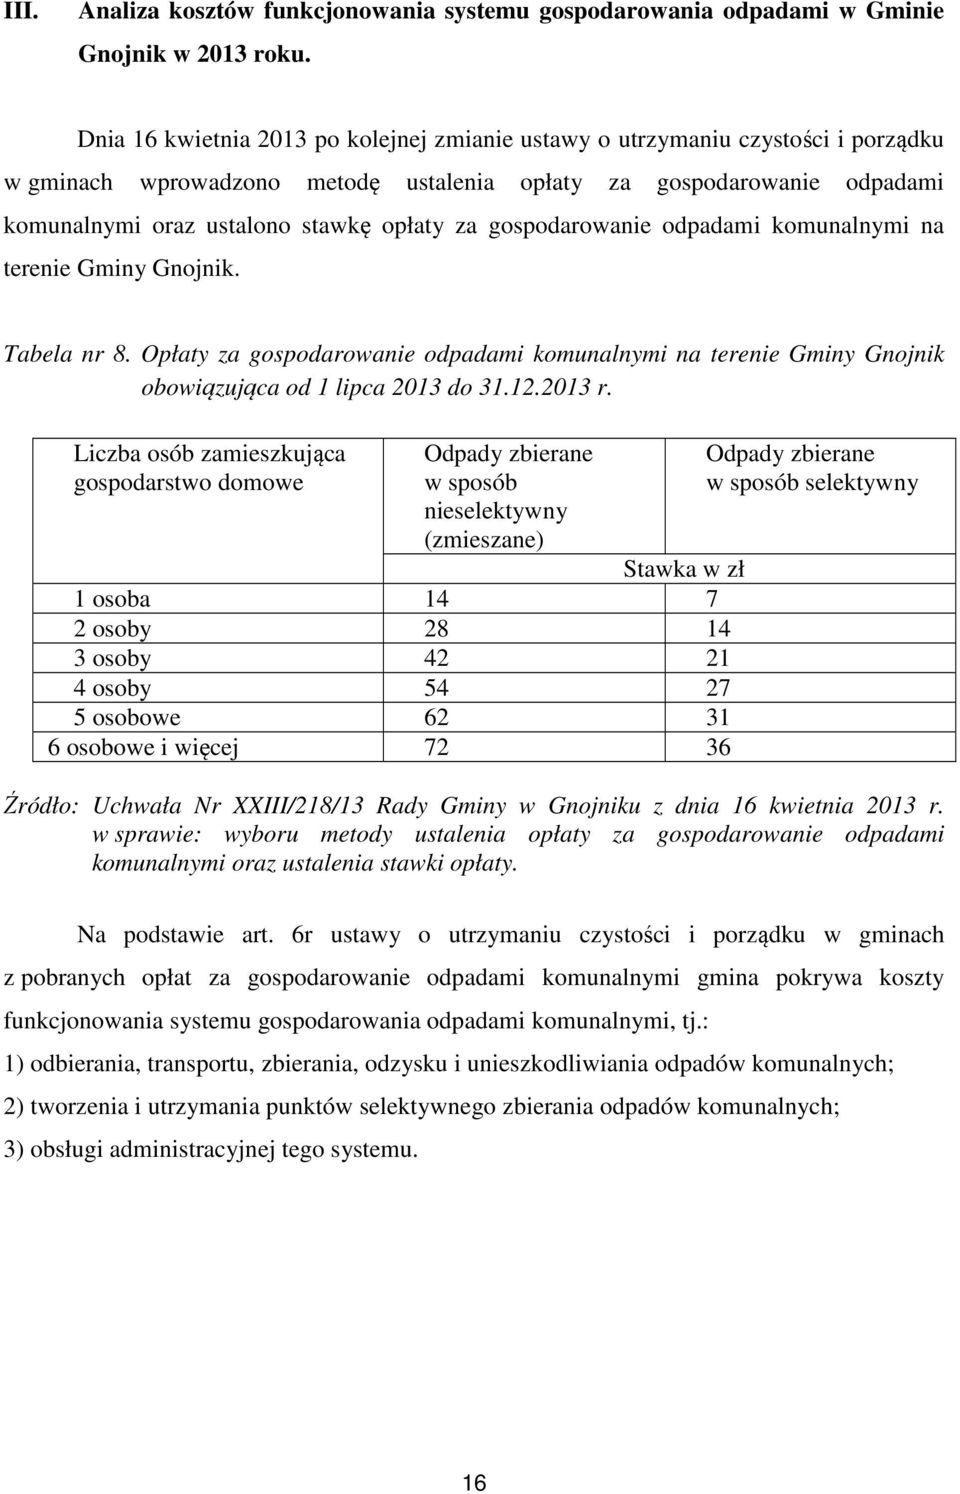 gospodarowanie odpadami komunalnymi na terenie Gminy Gnojnik. Tabela nr 8. Opłaty za gospodarowanie odpadami komunalnymi na terenie Gminy Gnojnik obowiązująca od 1 lipca 2013 do 31.12.2013 r.